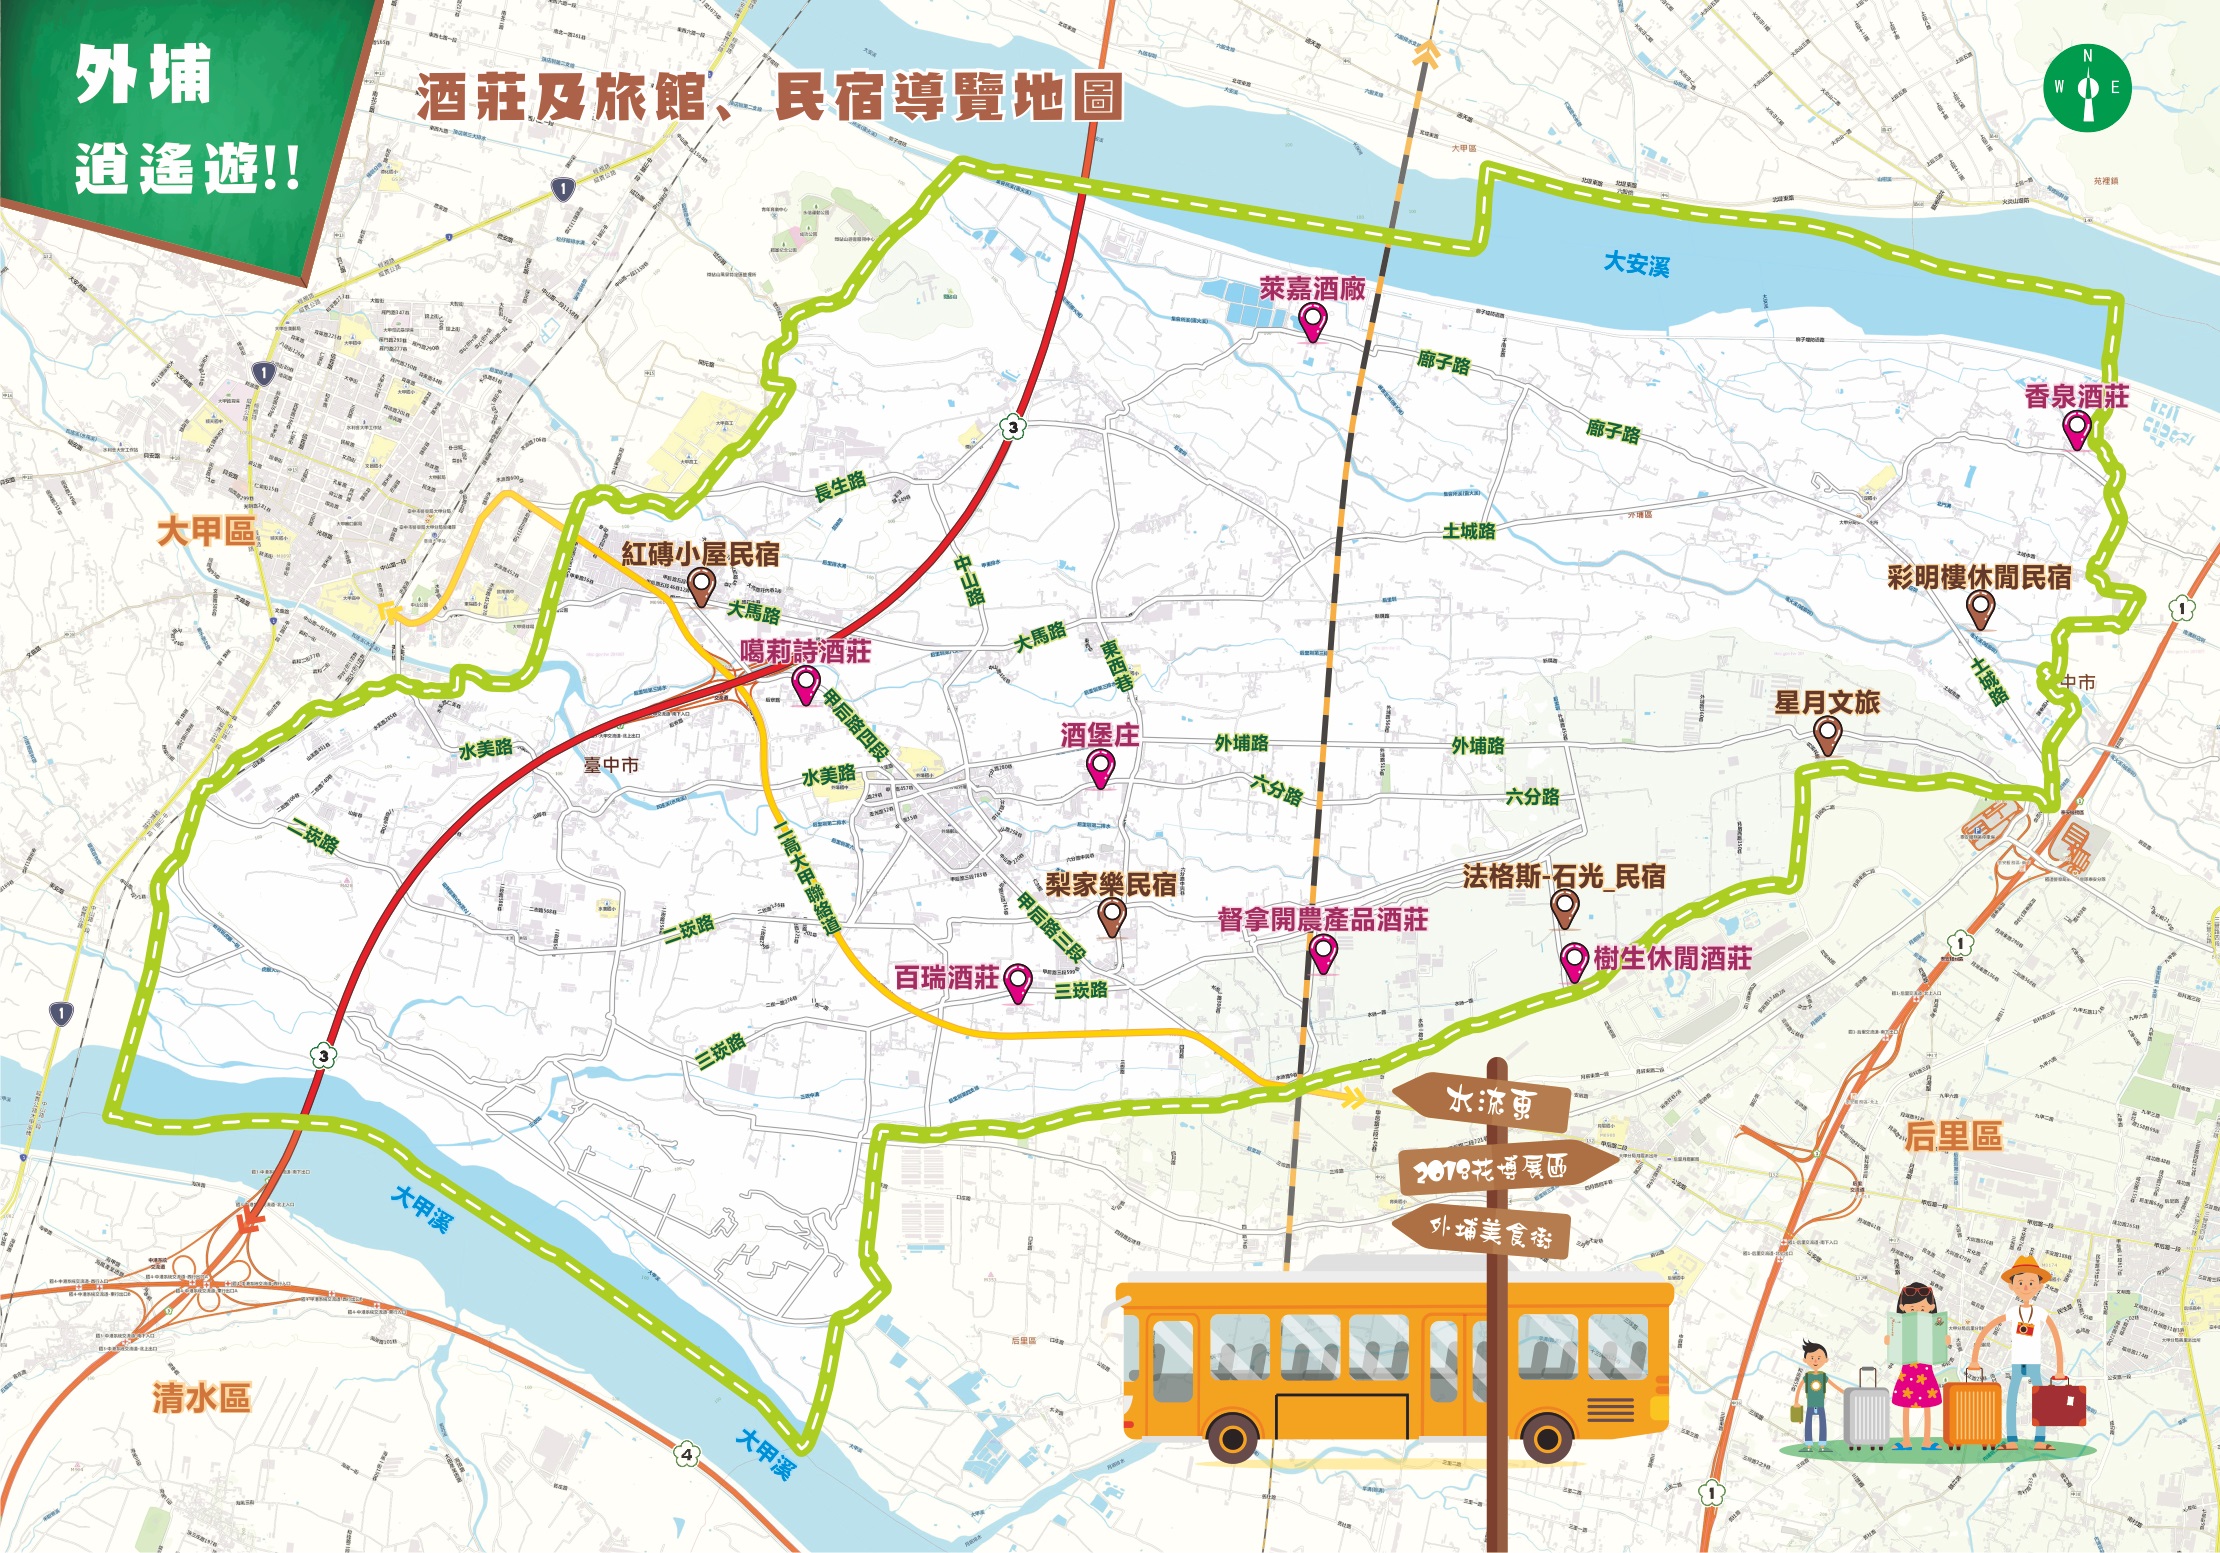 外埔區所有酒莊及旅館-民宿之位置及路線標示地圖